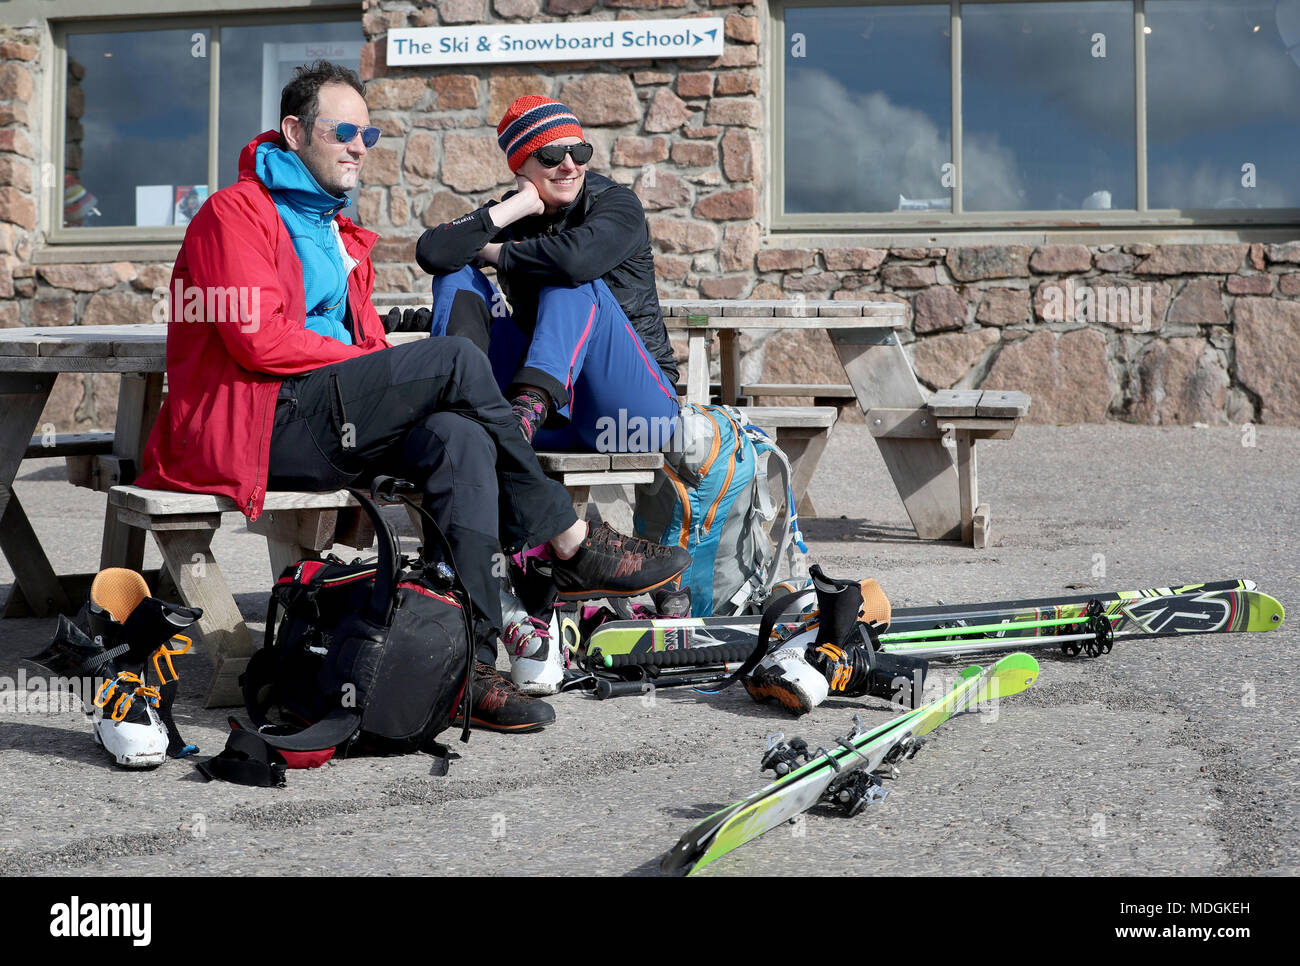 James et Andrea Gregory de Londres profitez de l'après-midi ensoleillée après une journée de ski sur les quelques plaques de neige sur les montagnes de Cairngorm près d'Aviemore, en Écosse. Banque D'Images